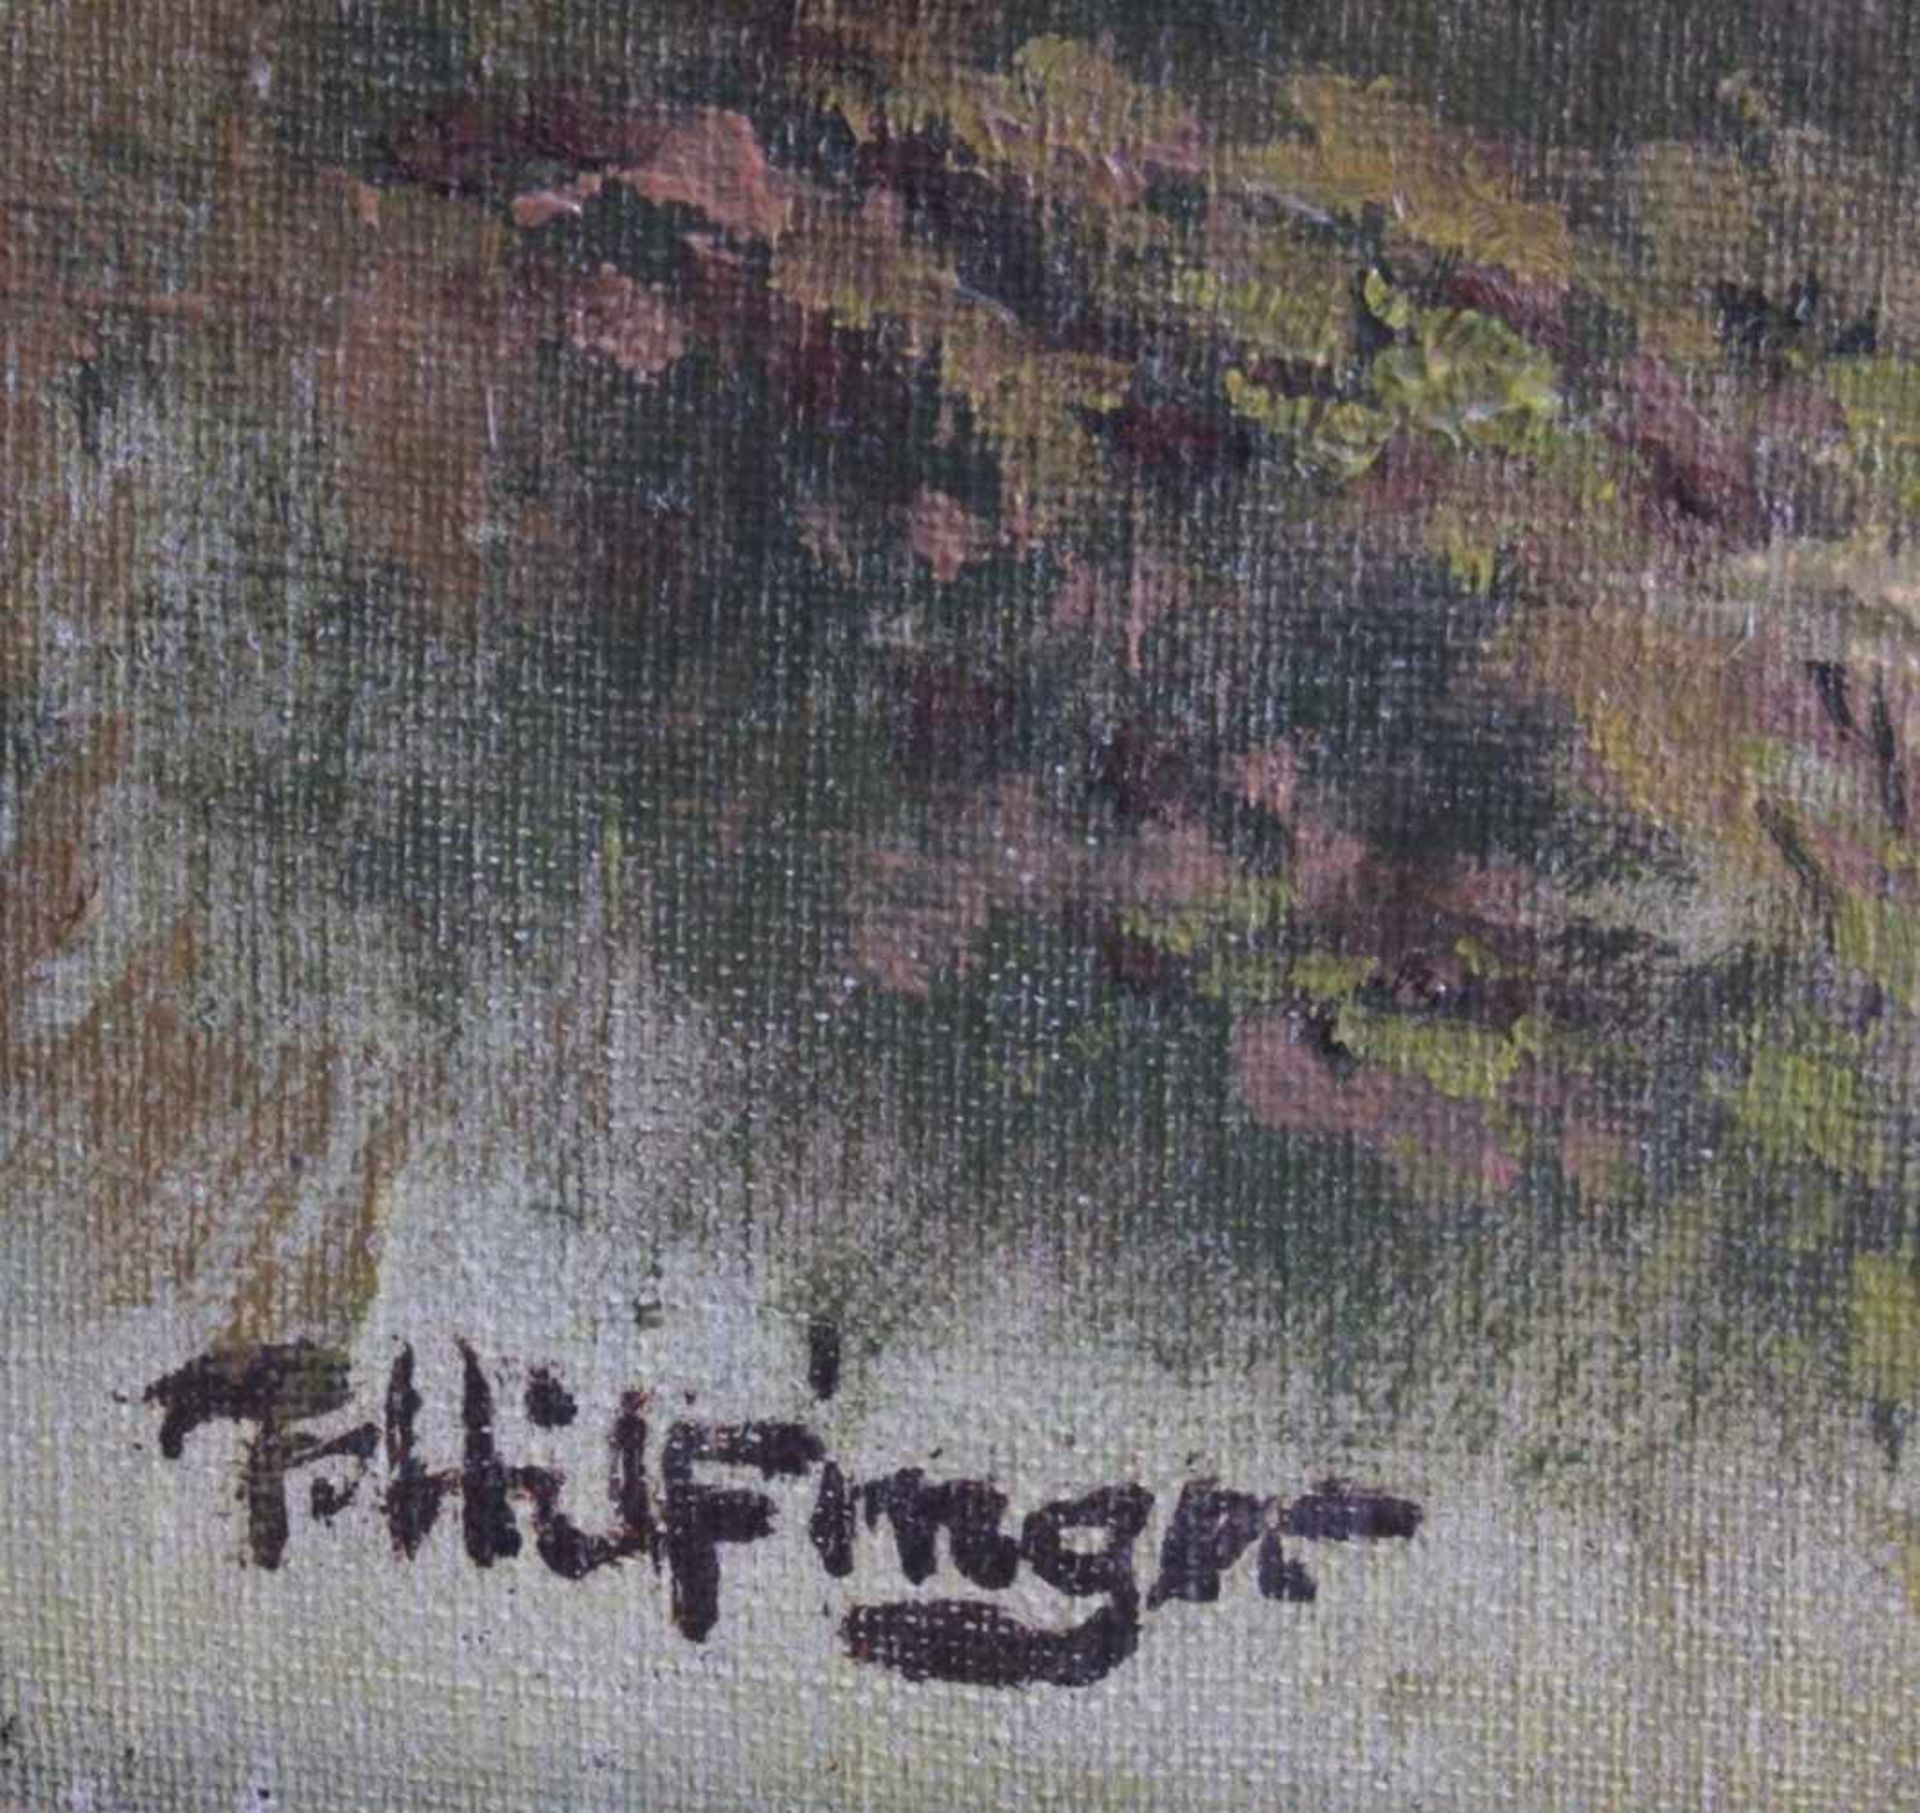 F. Hilfinger ?-?, "Sommerliche Landschaft mit Kirche"Öl auf Leinwand gemalt, unten links signiert, - Bild 3 aus 4